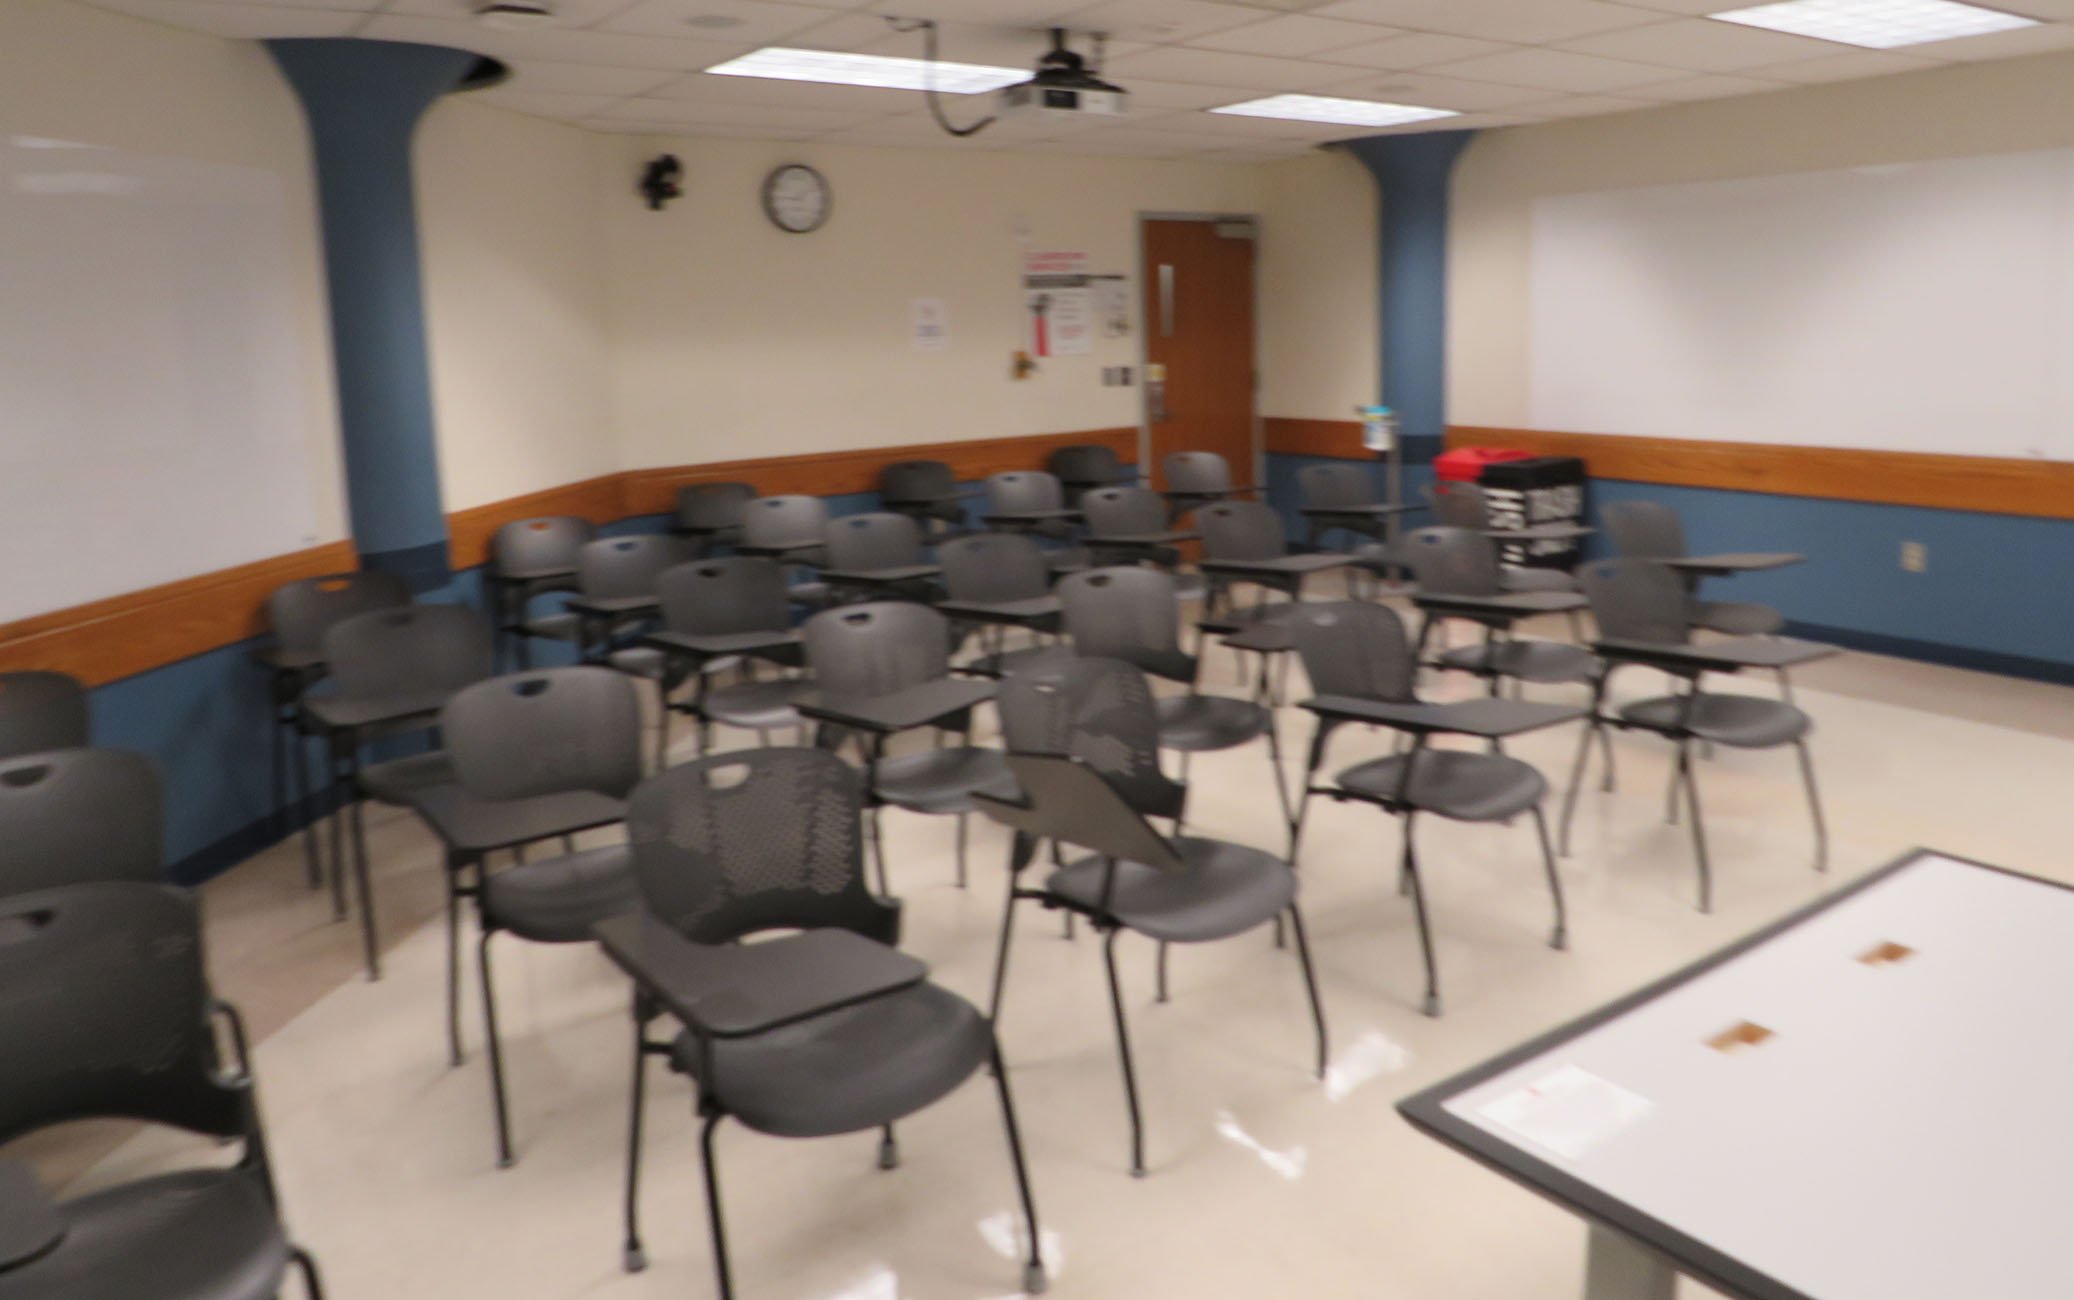 Enarson Classroom Building Room 211